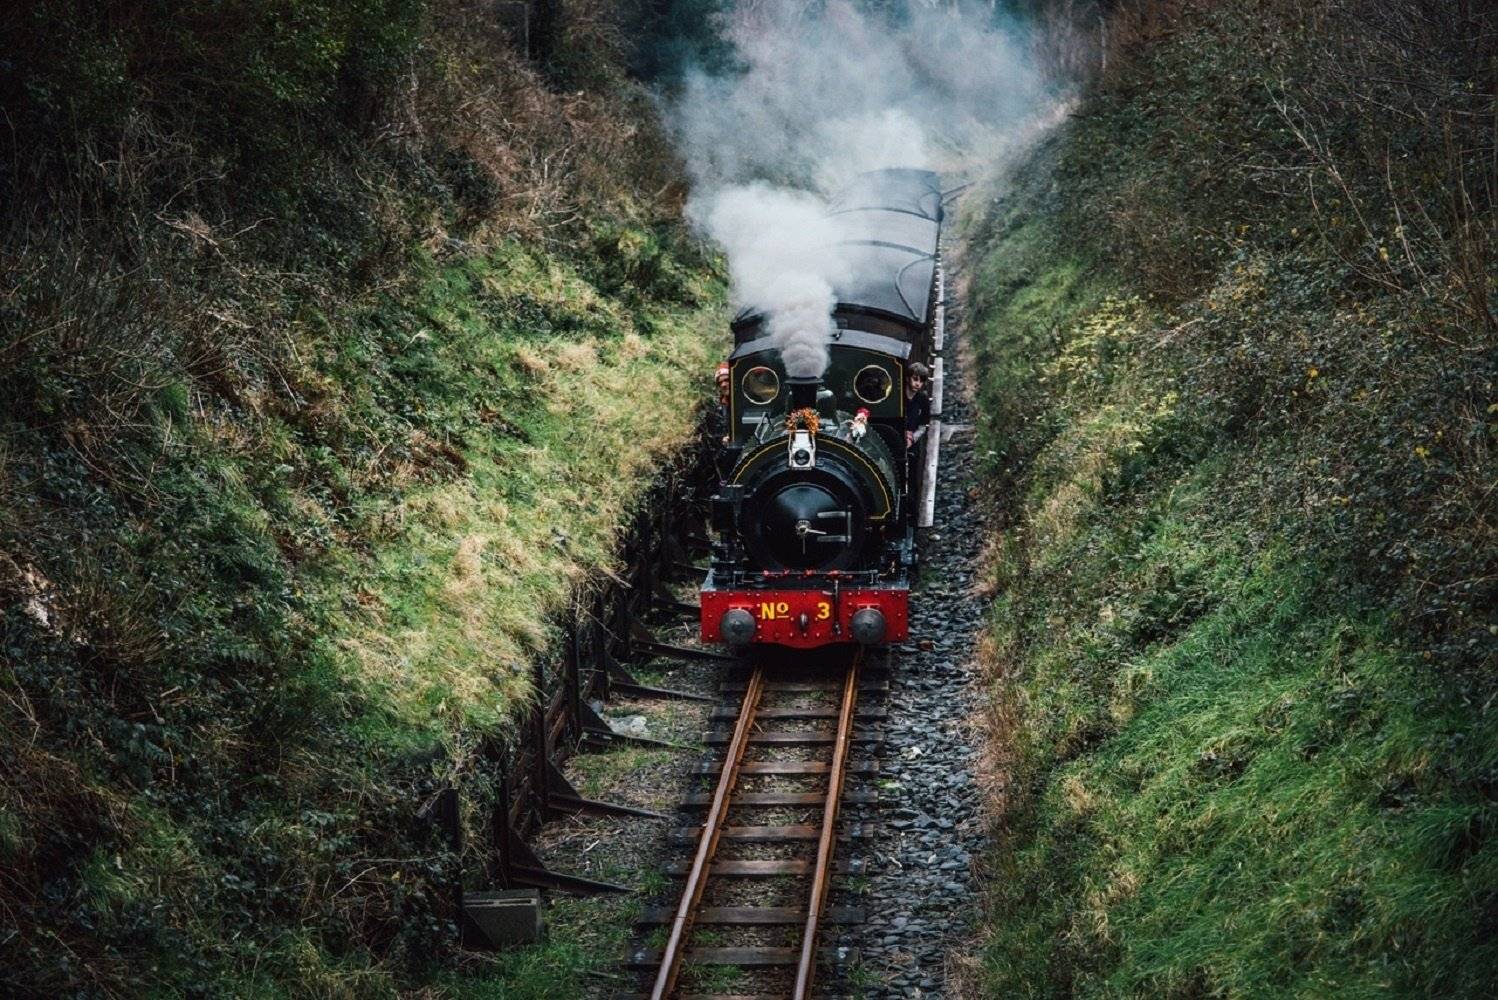 Le Pays de Galles en famille, entre légende du roi Arthur et trains à vapeur